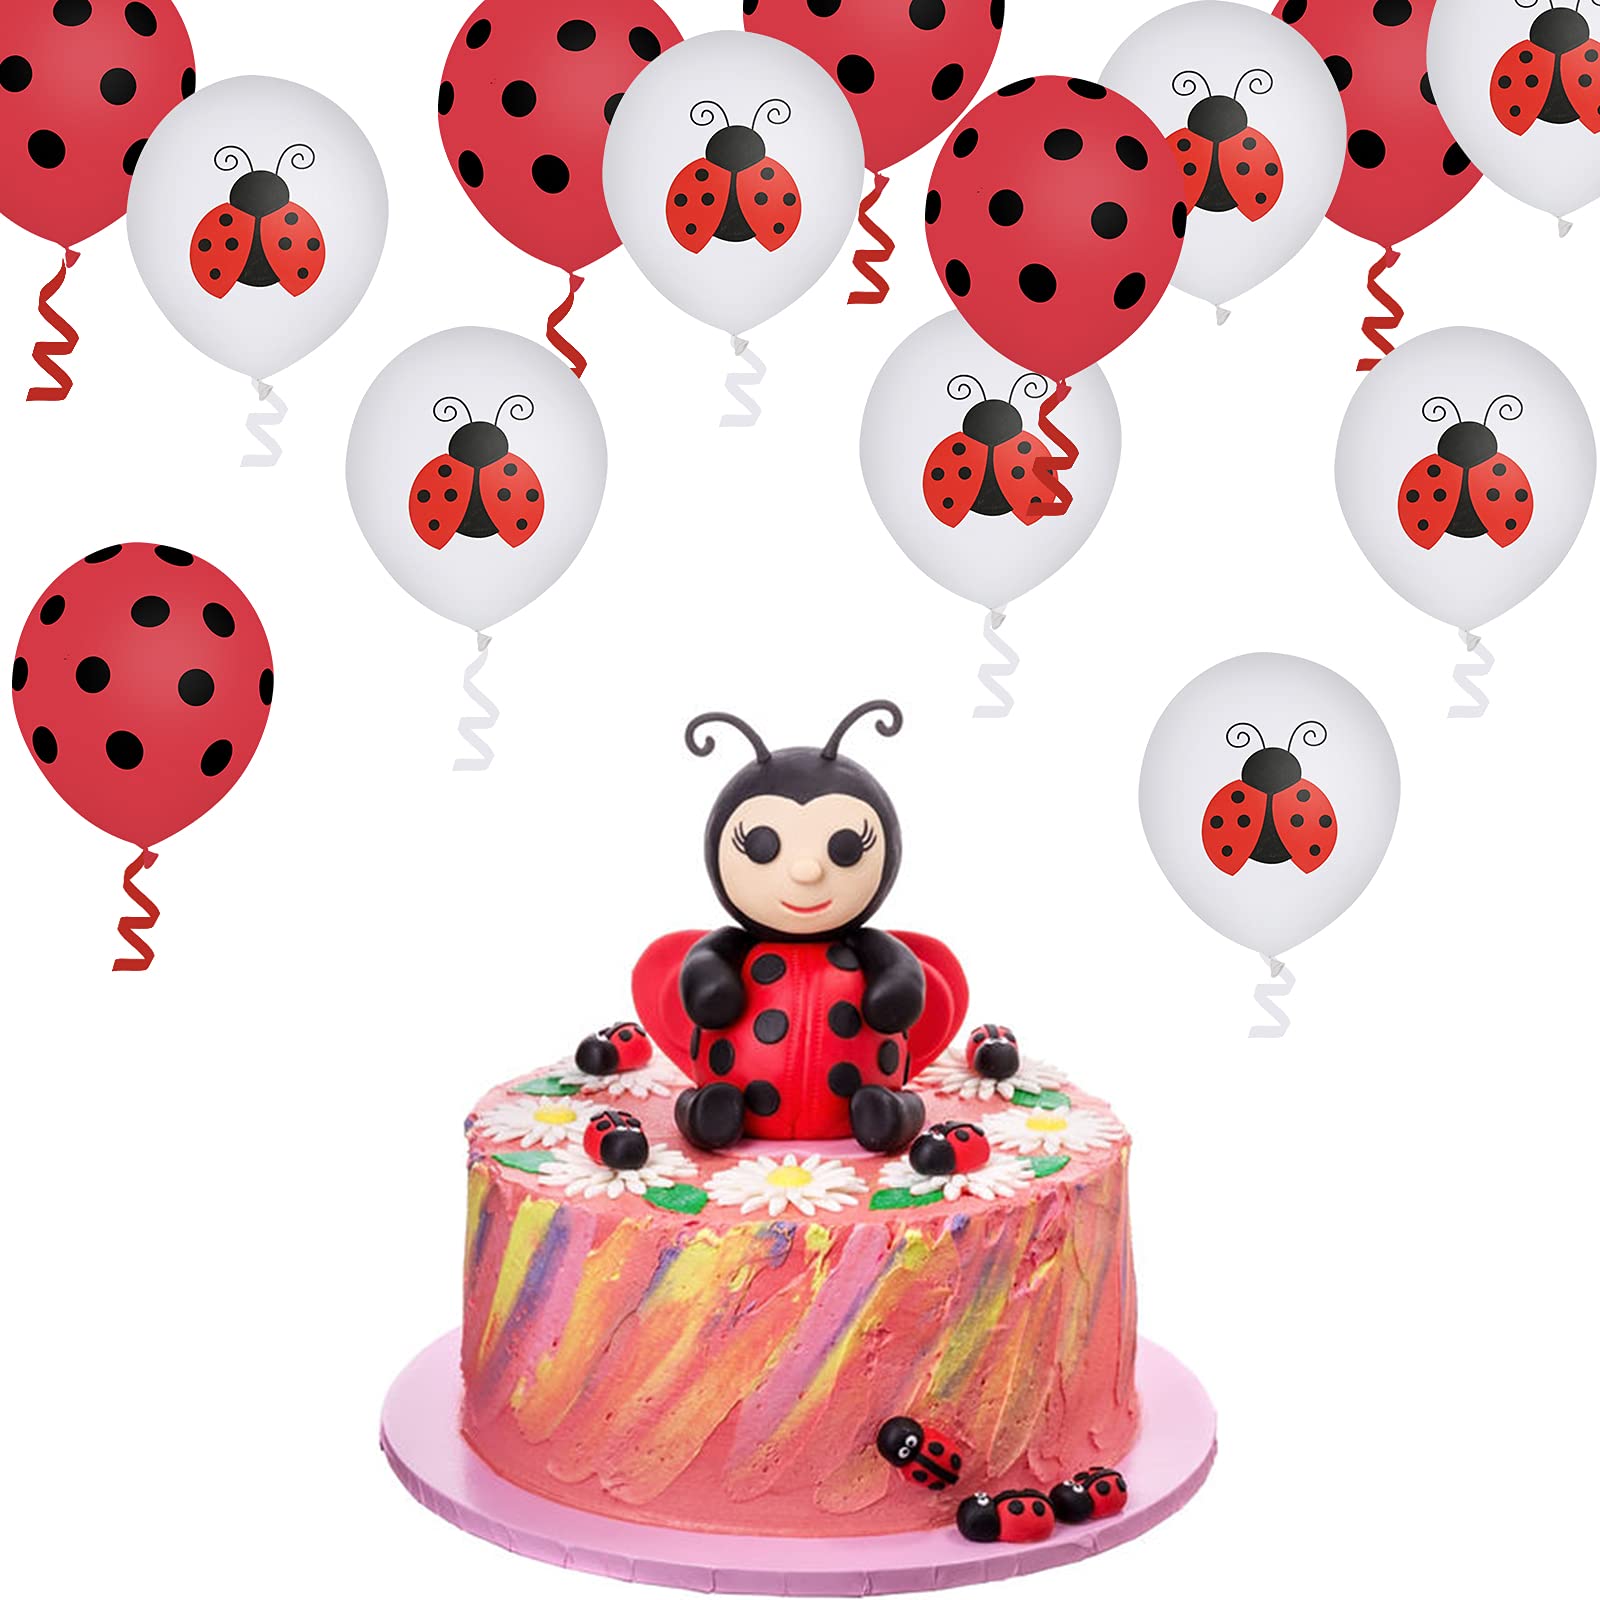 30 Pcs Ladybug Theme Balloons Red Black Polka Dot Balloons 12 Inches Ladybug Decoration Balloon for Ladybug Theme Birthday Party Supplies